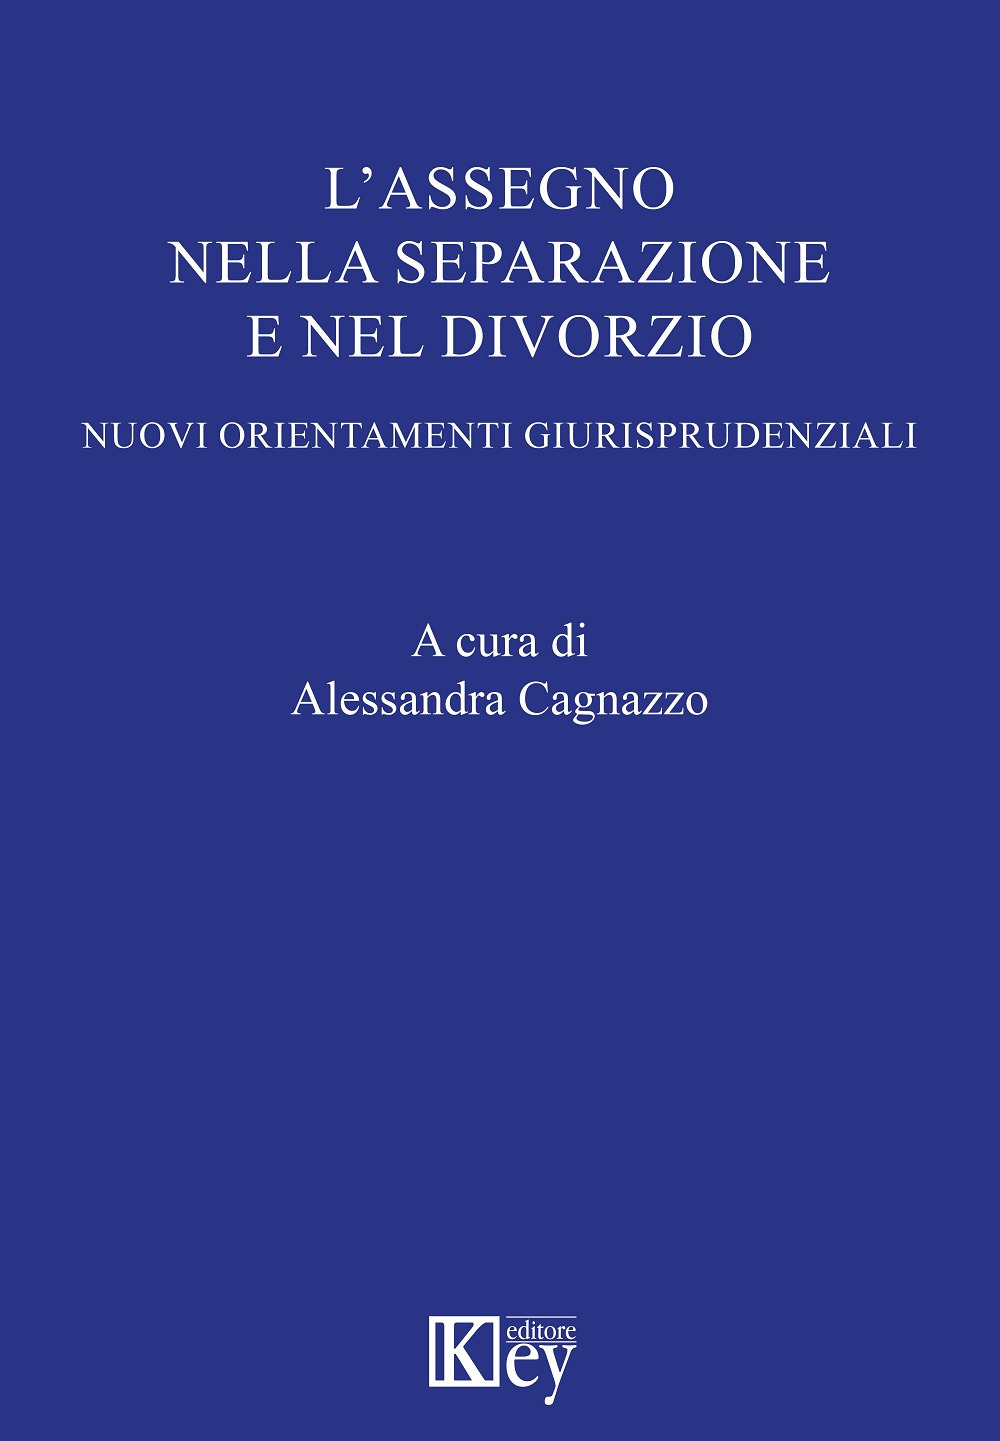 Libri Alessandra Cagnazzo - L'Assegno Nella Separazione E Nel Divorzio NUOVO SIGILLATO, EDIZIONE DEL 25/10/2019 SUBITO DISPONIBILE